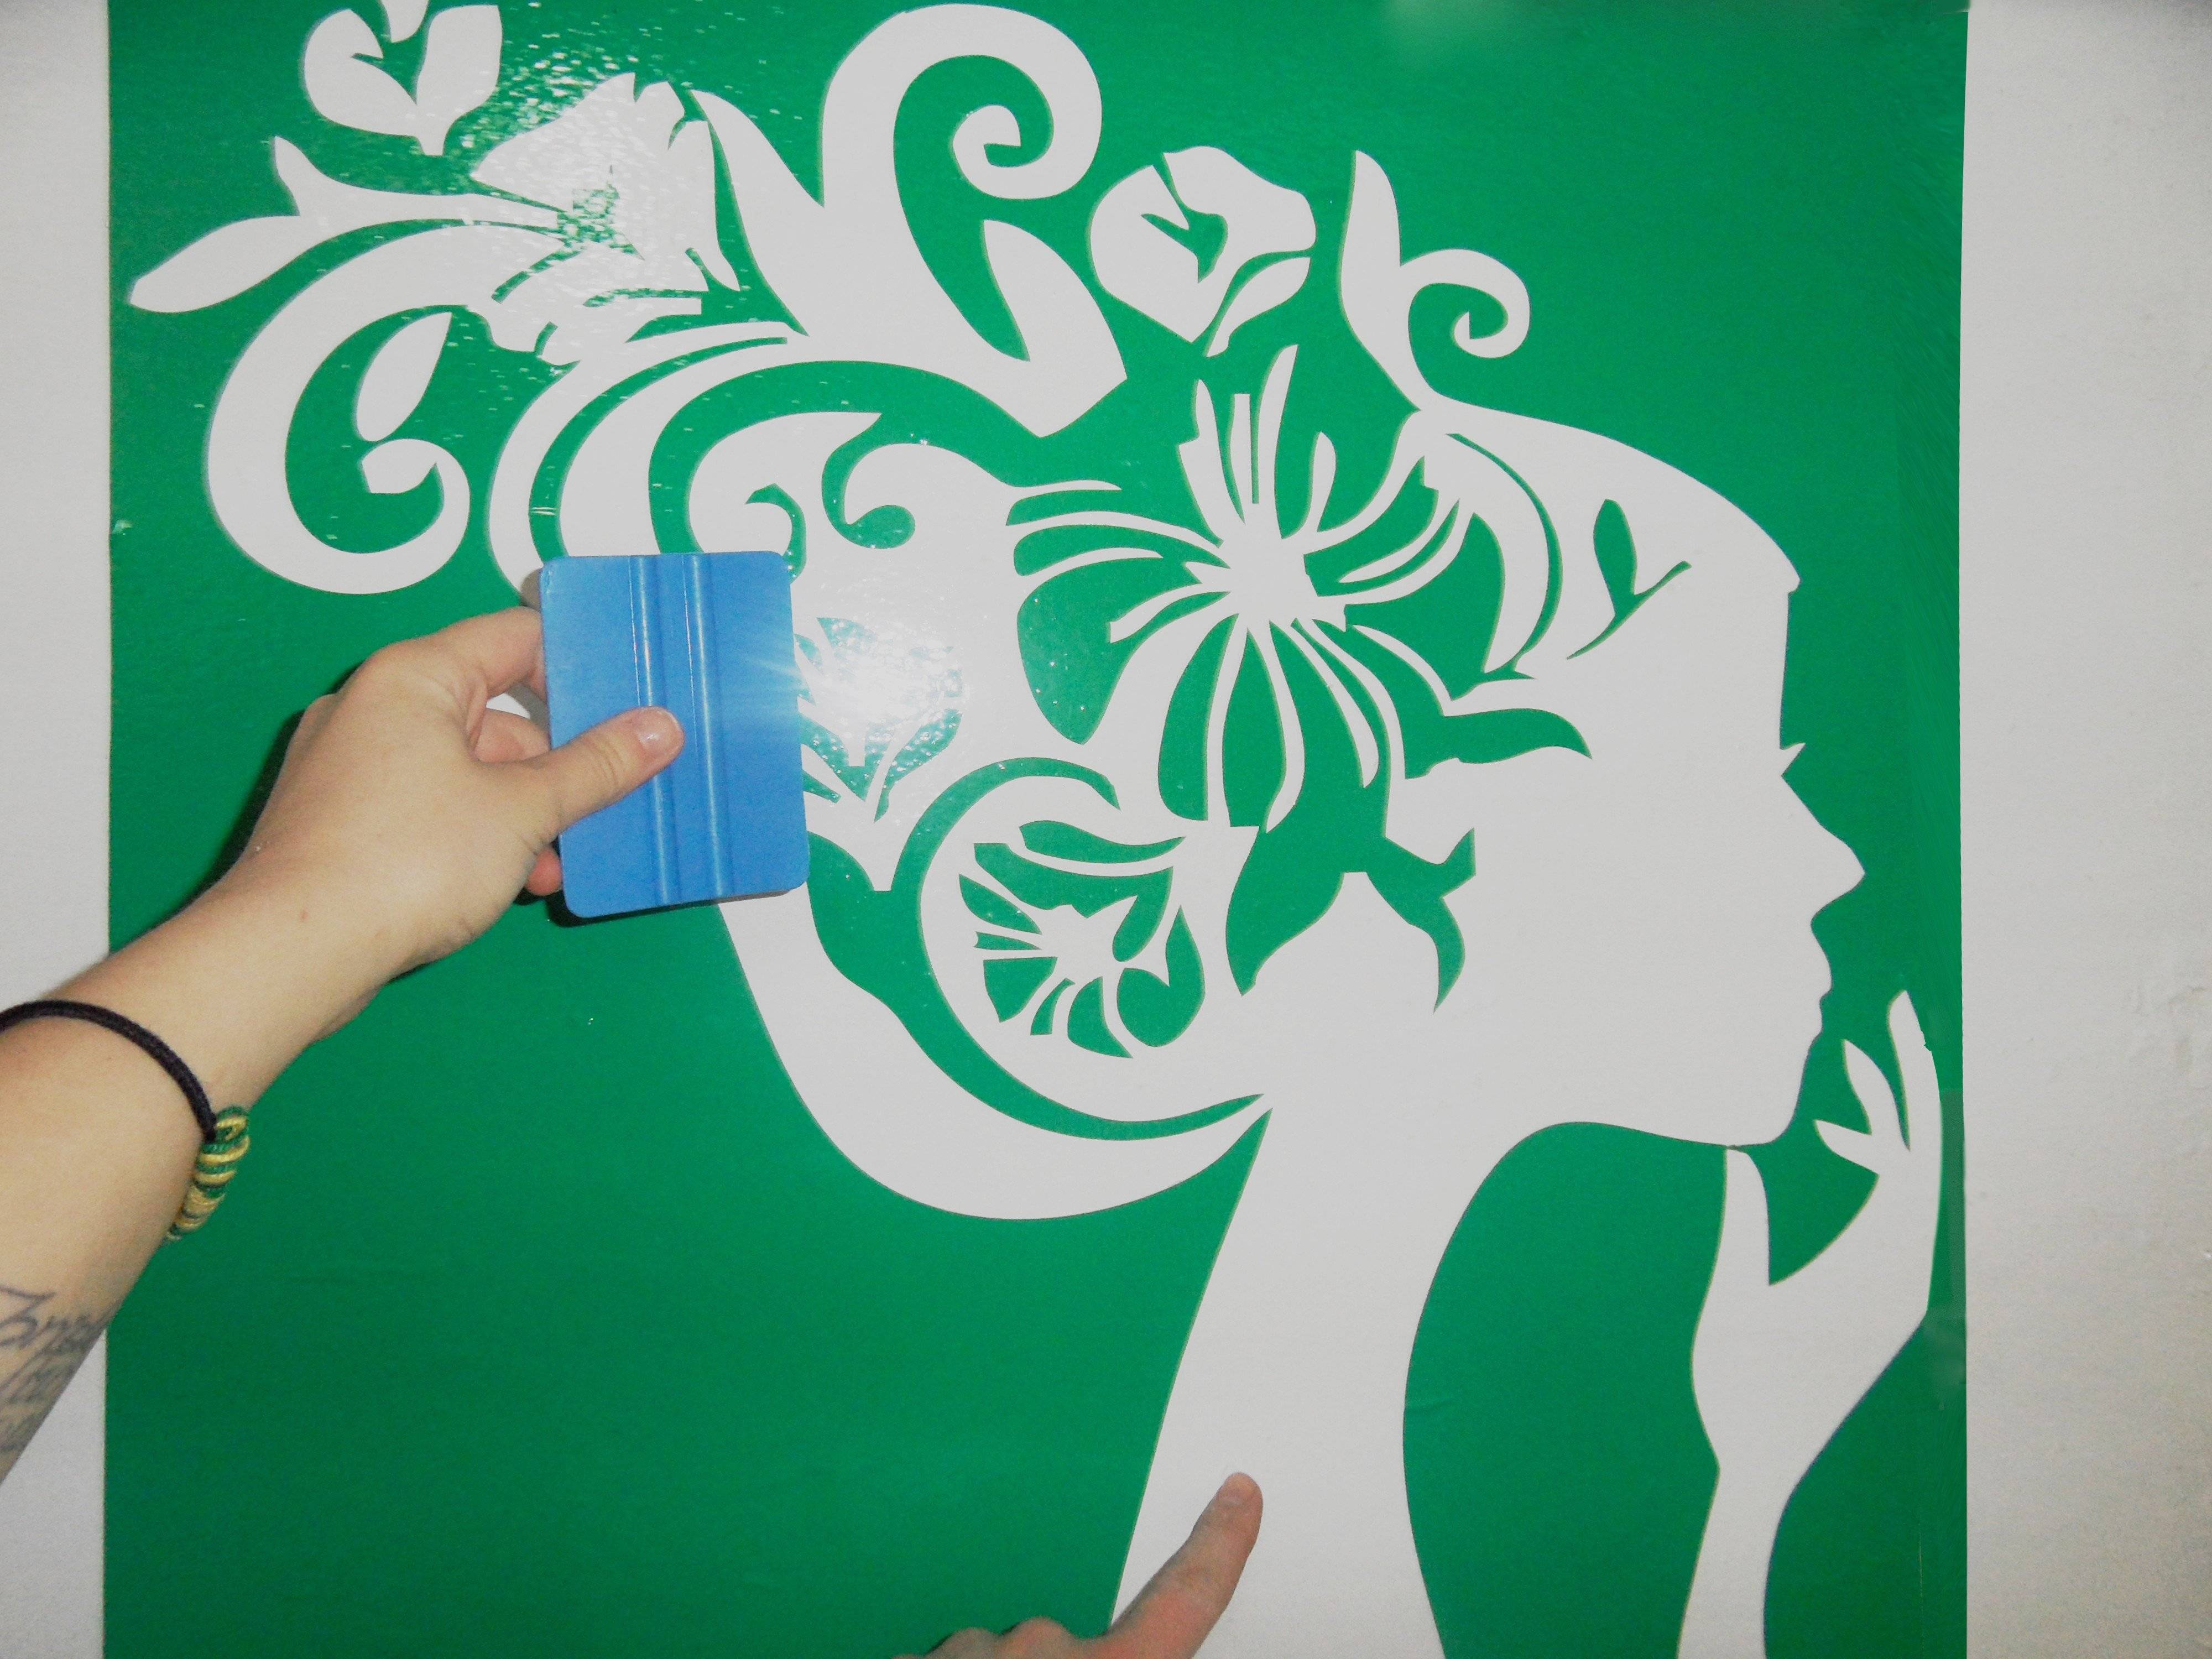 Трафареты для декора: лучшие идеи дизайна и оформления стен своими руками (135 фото и видео)